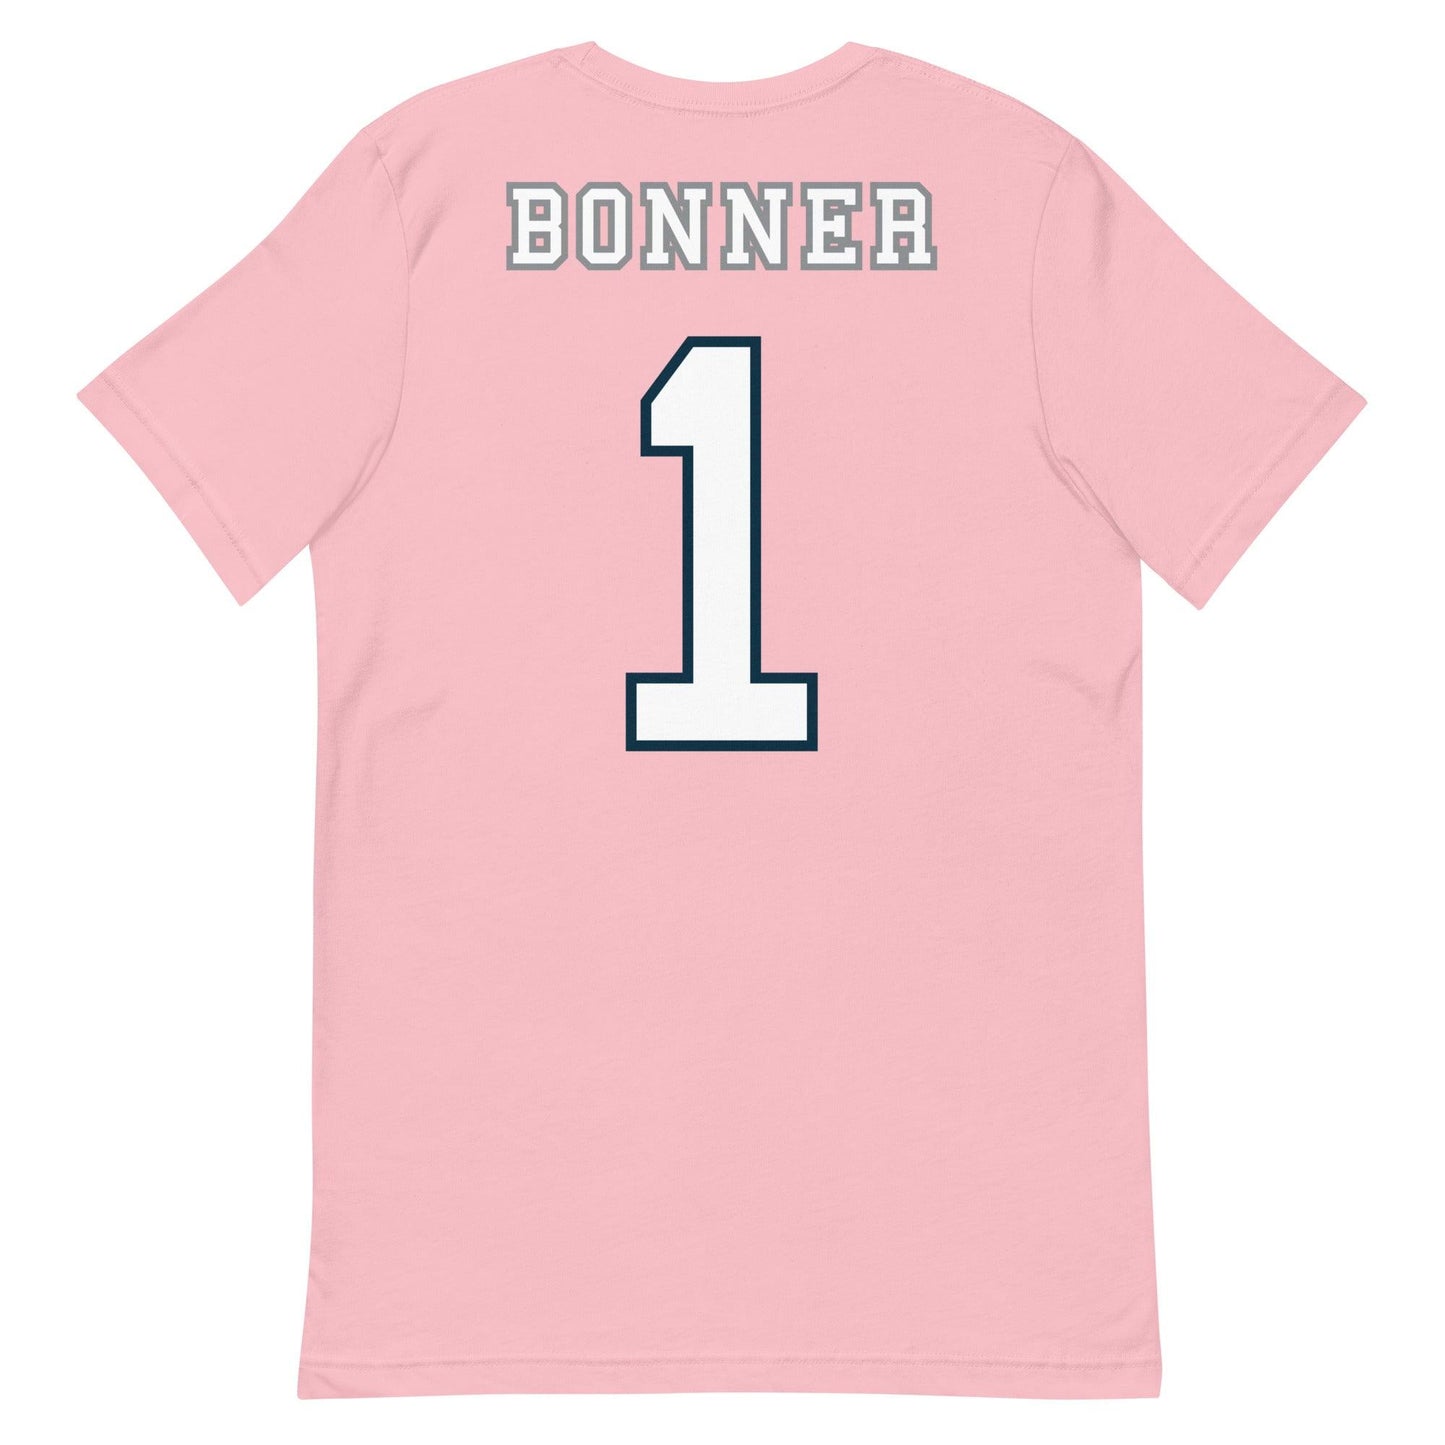 Logan "Bonner "Jersey" t-shirt - Fan Arch